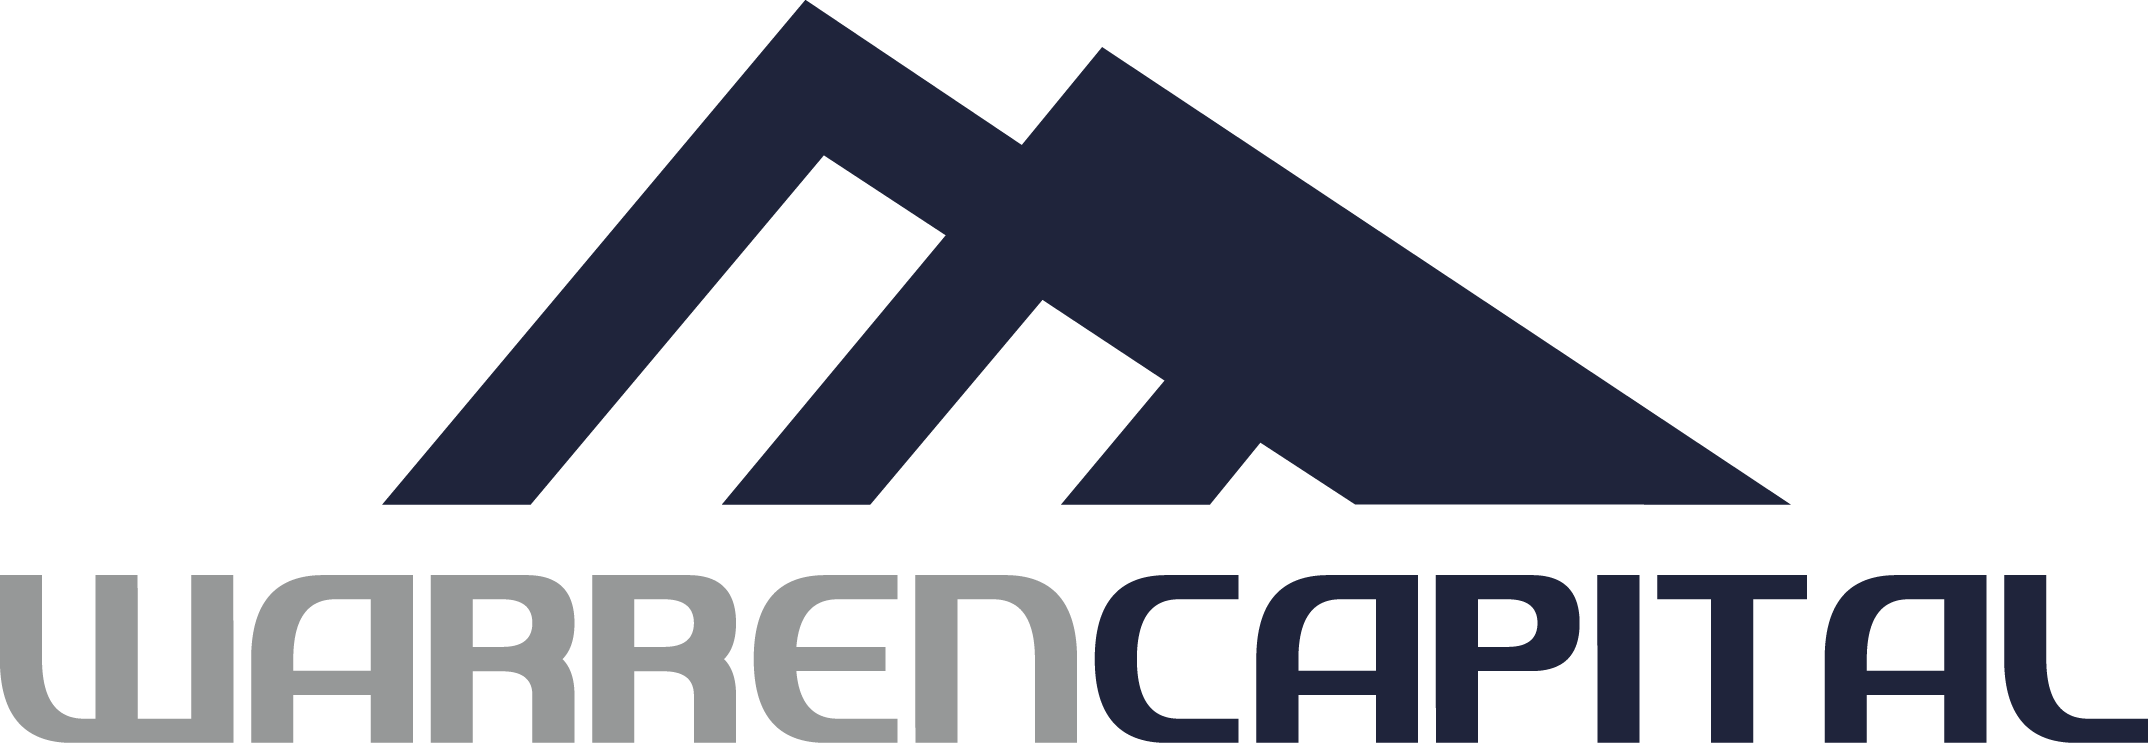 Warren Capital Logo